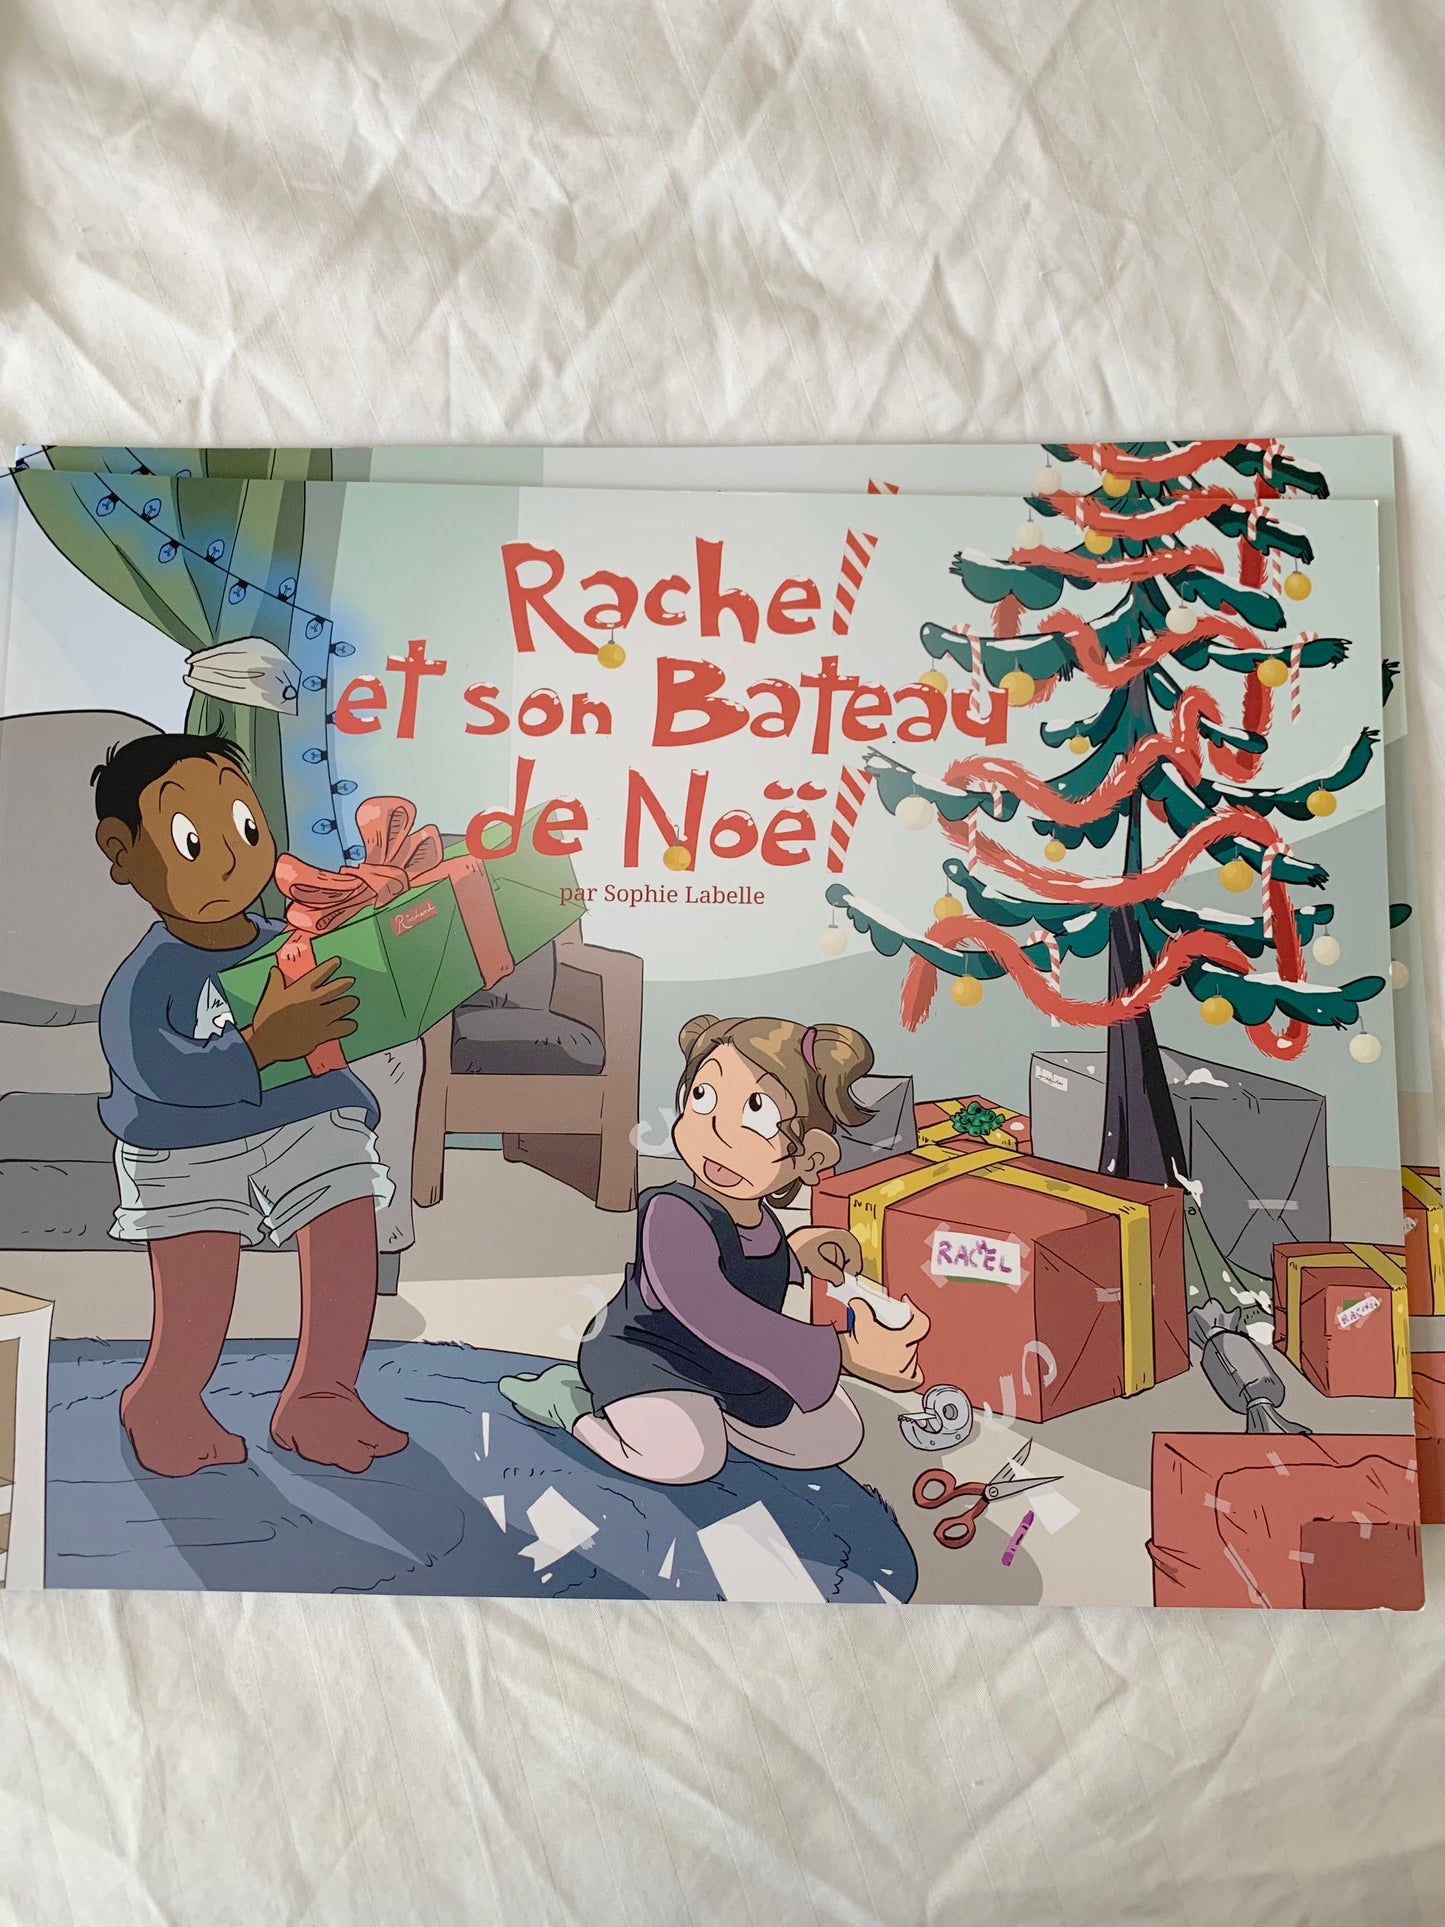 Rachel et son Bateau de Noel by Sophie Labelle